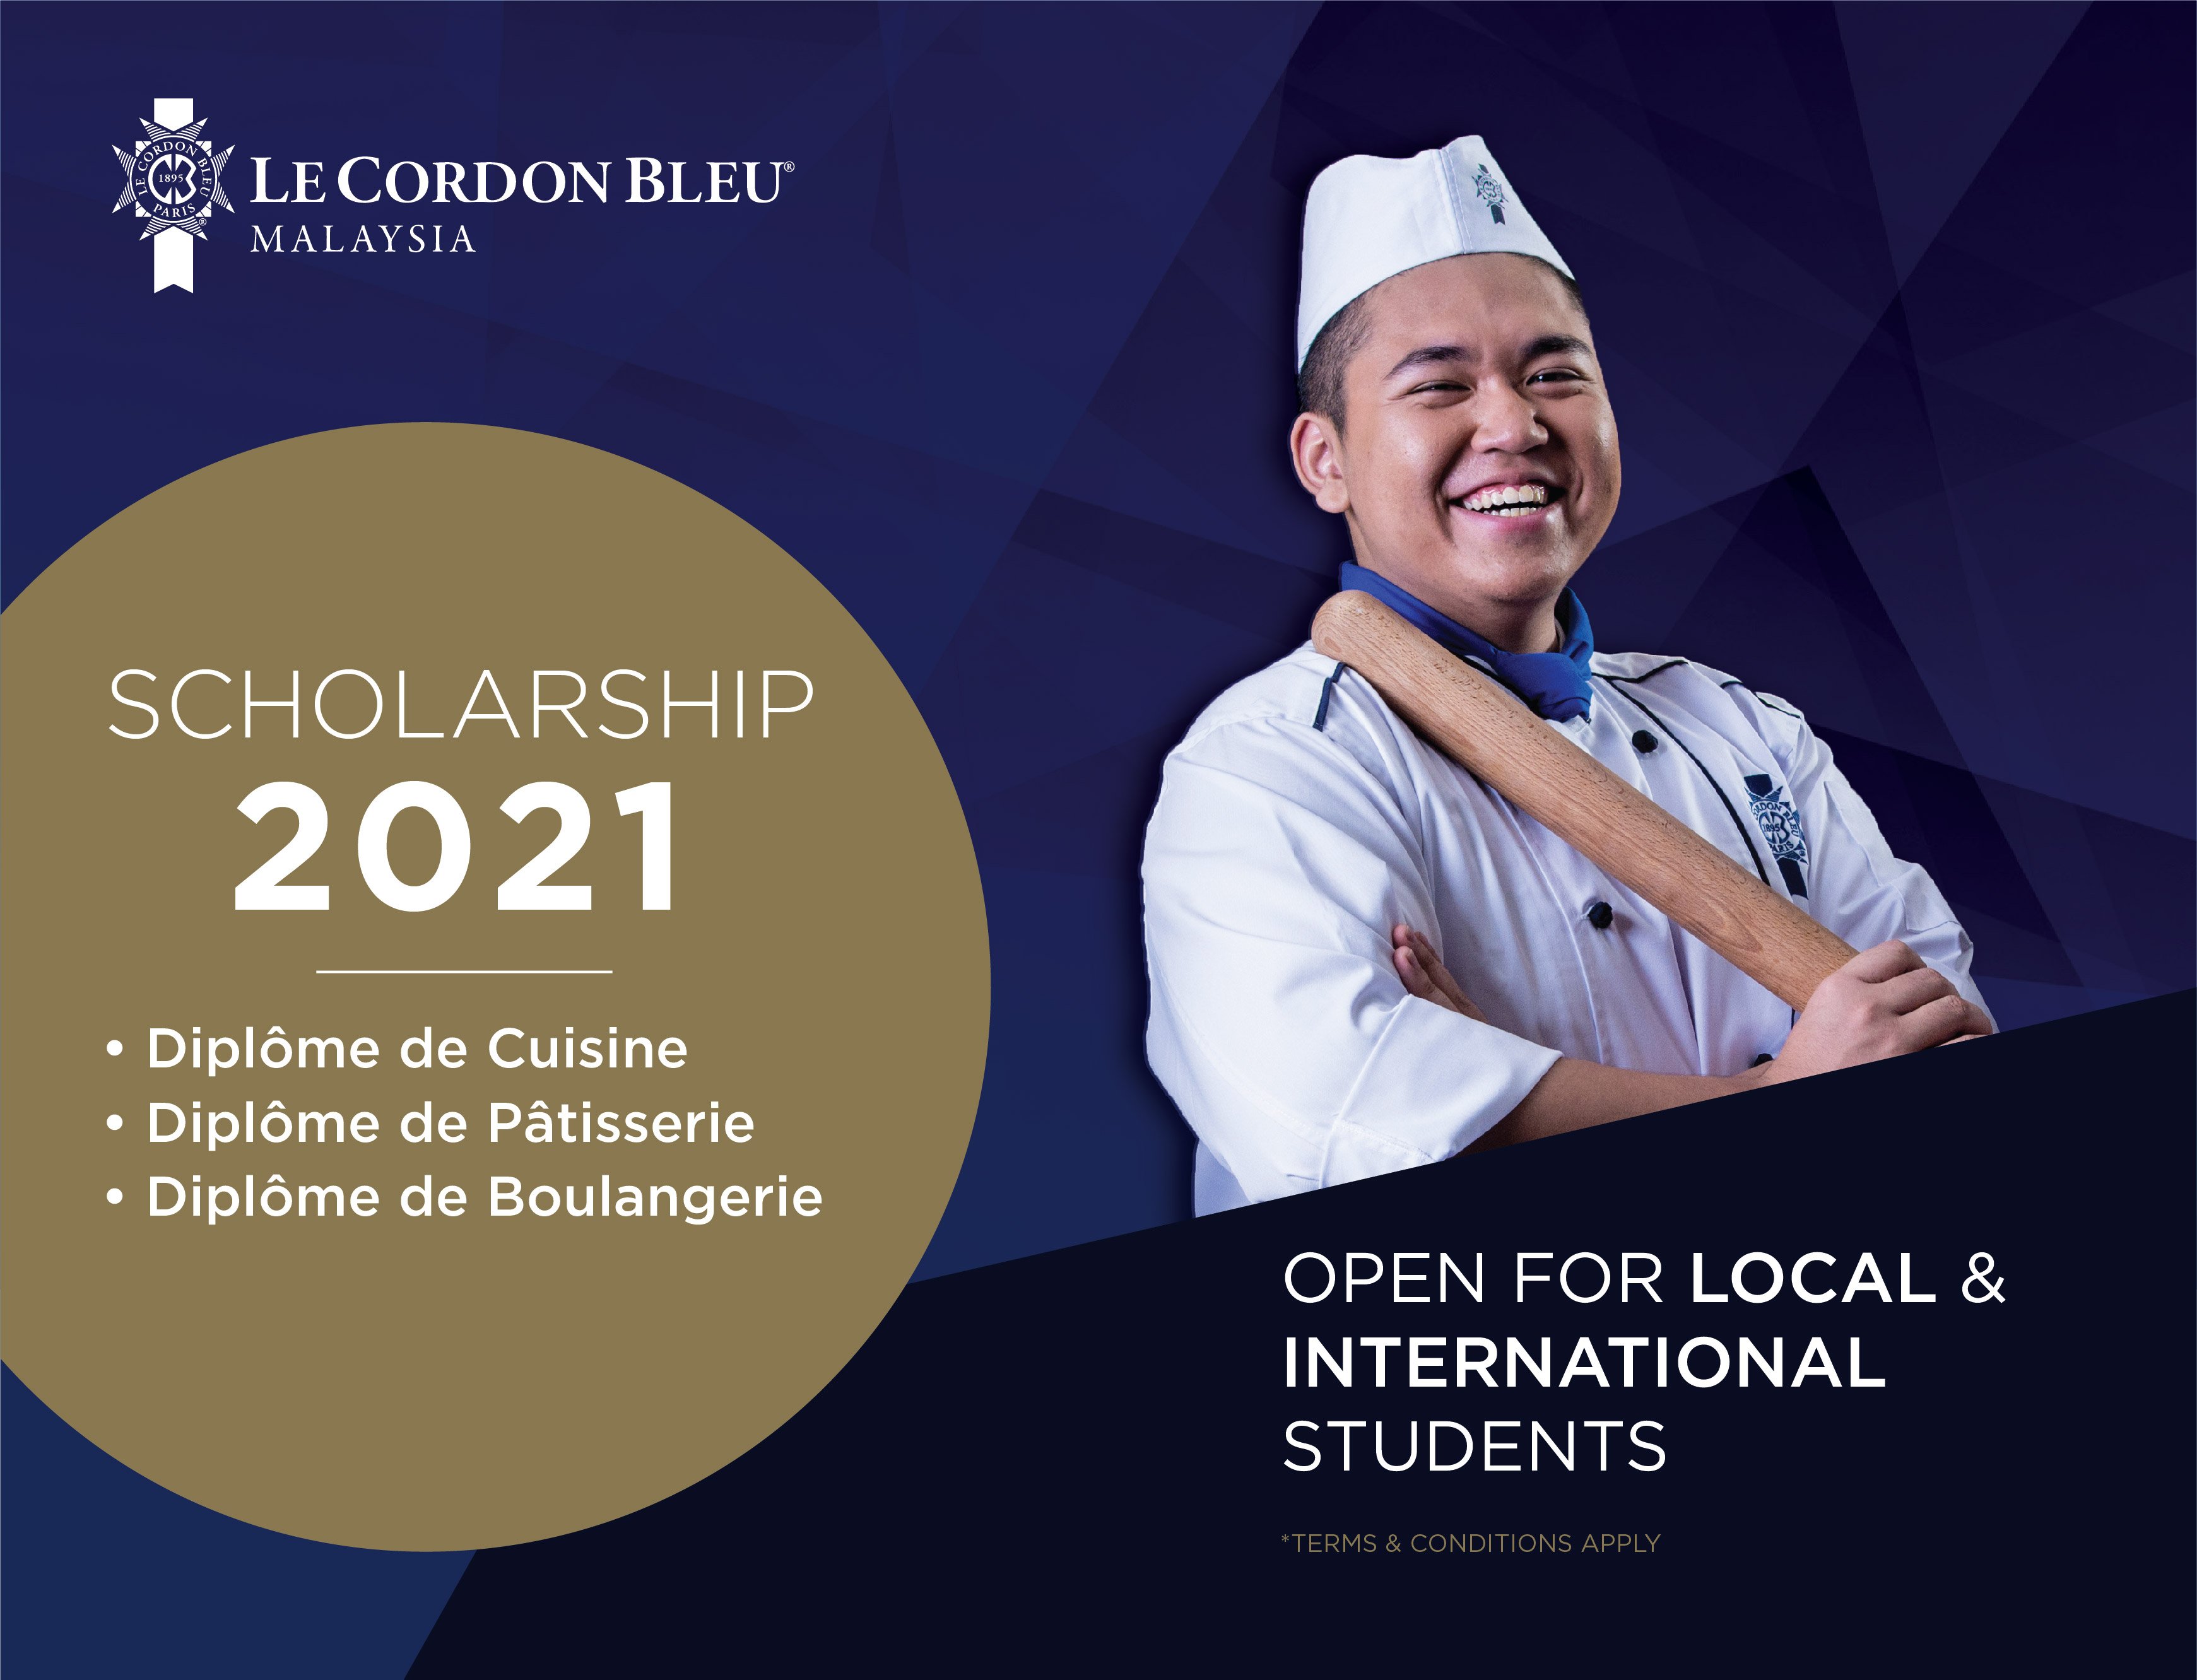 Le Cordon Bleu Malaysia scholarship 2021